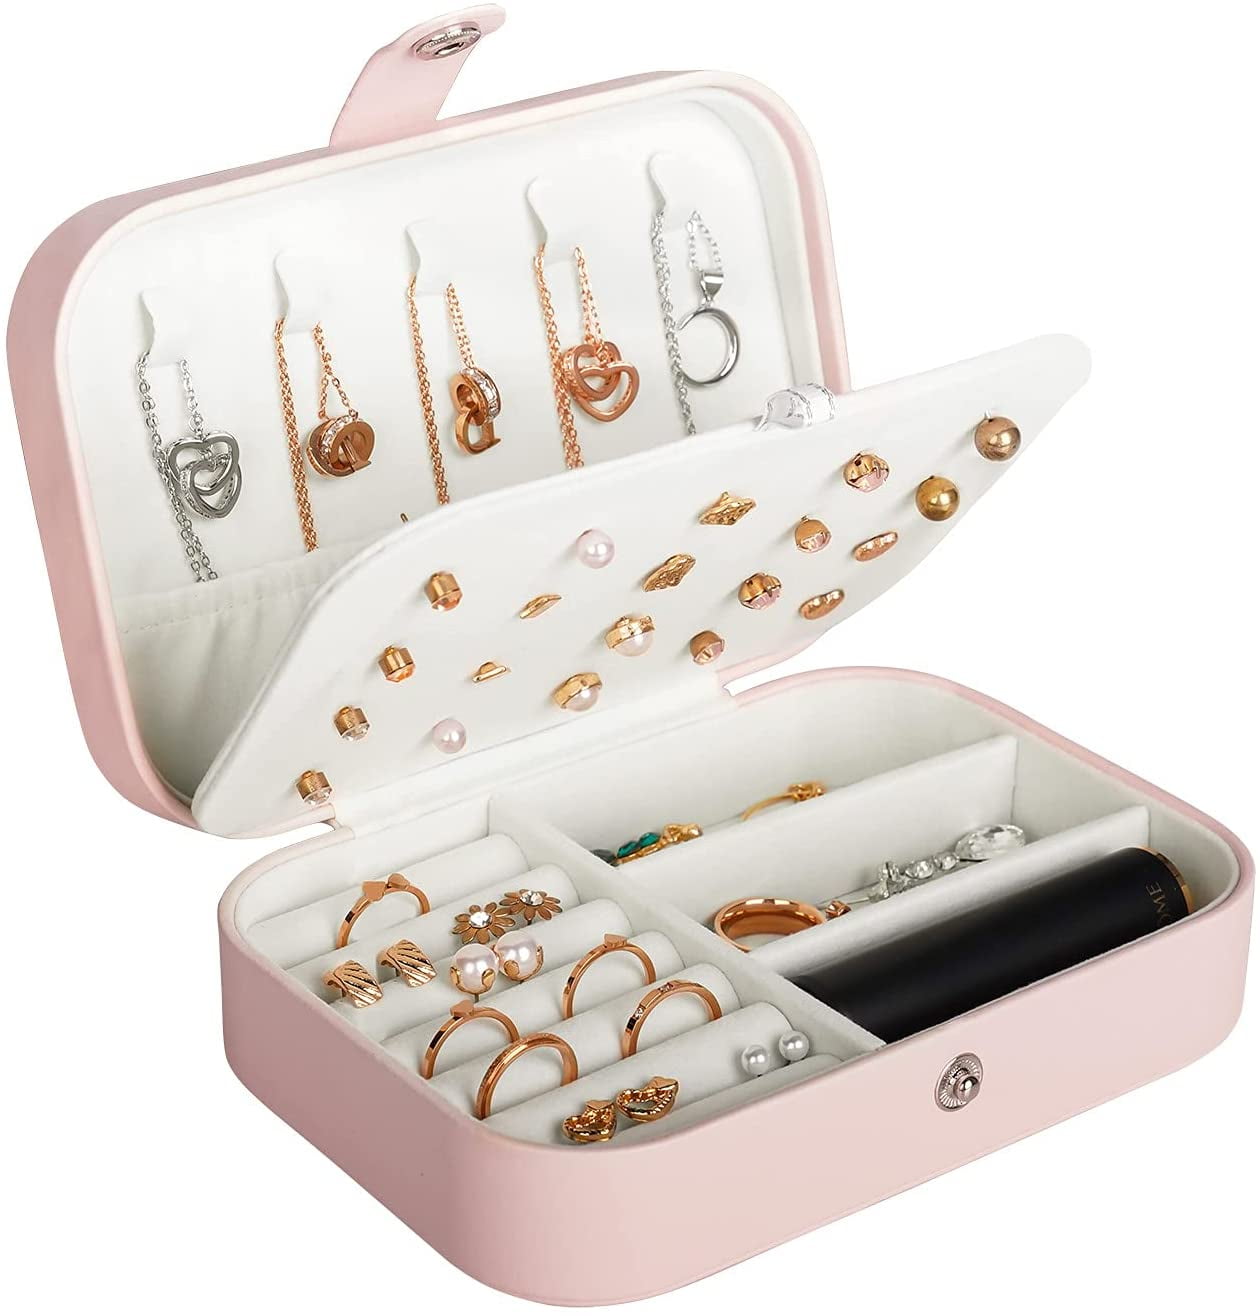 LOYEJEGL Stitch Travel Jewelry Box for Girls Women, PU Leather Small Jewelry Storage+Makeup Mirror,| Jewelry Organizer Bag | Jewelry Case for